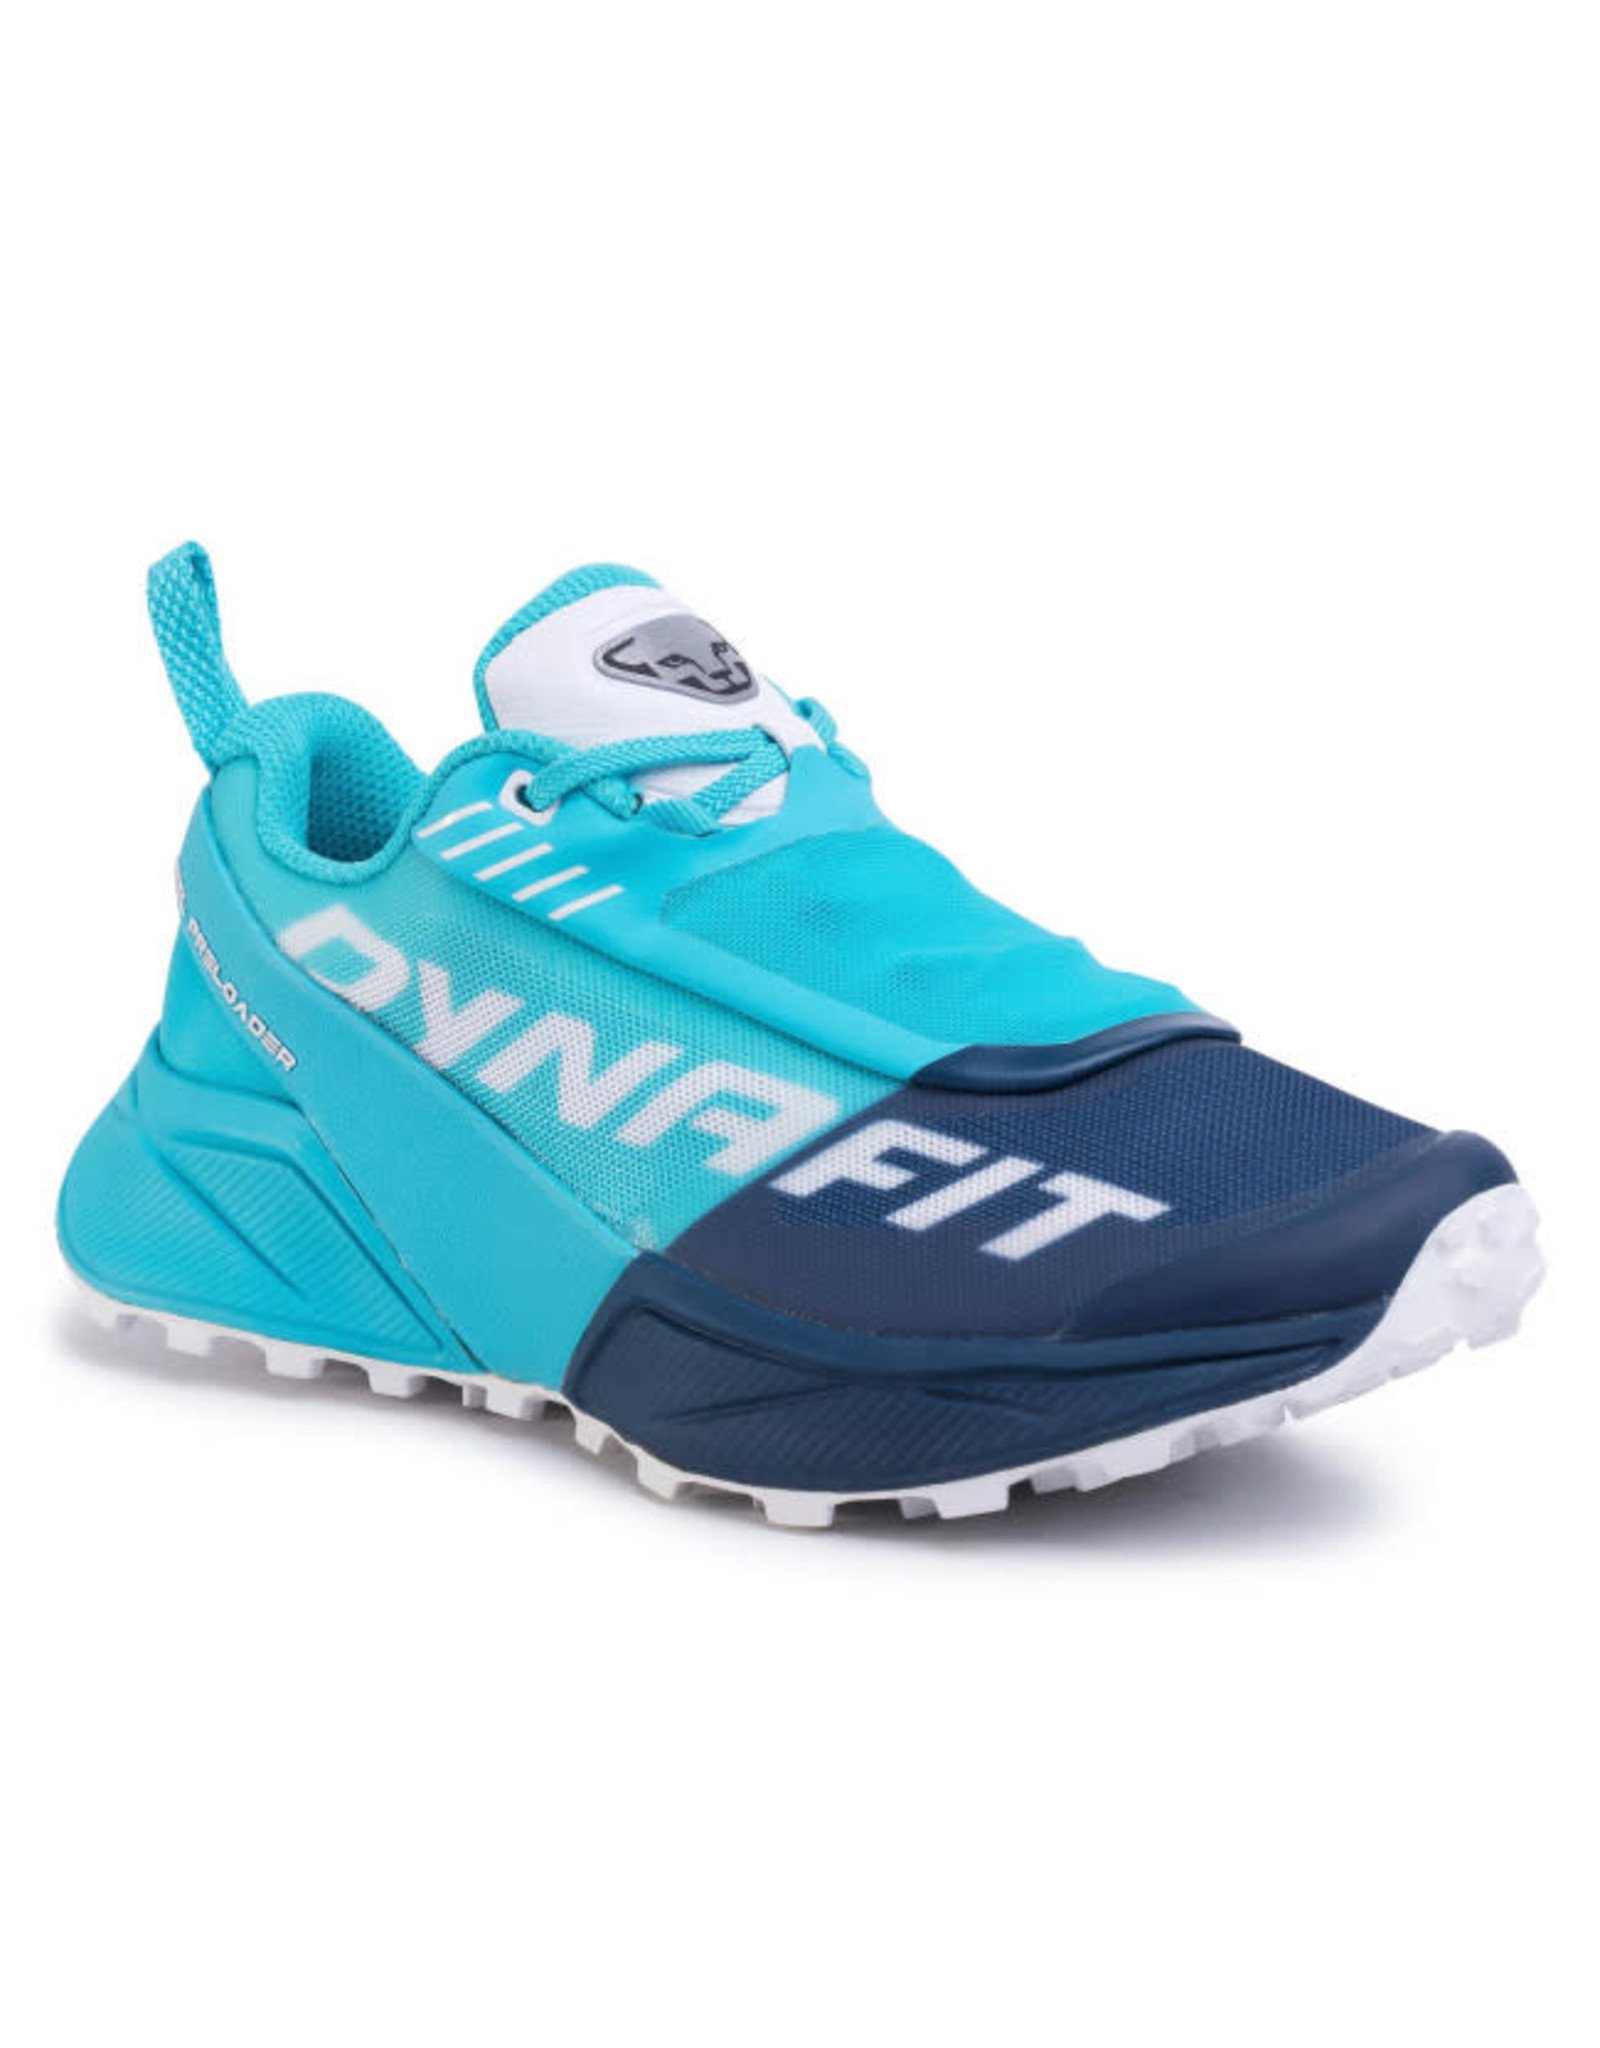 Dynafit Ultra 100 women's shoe